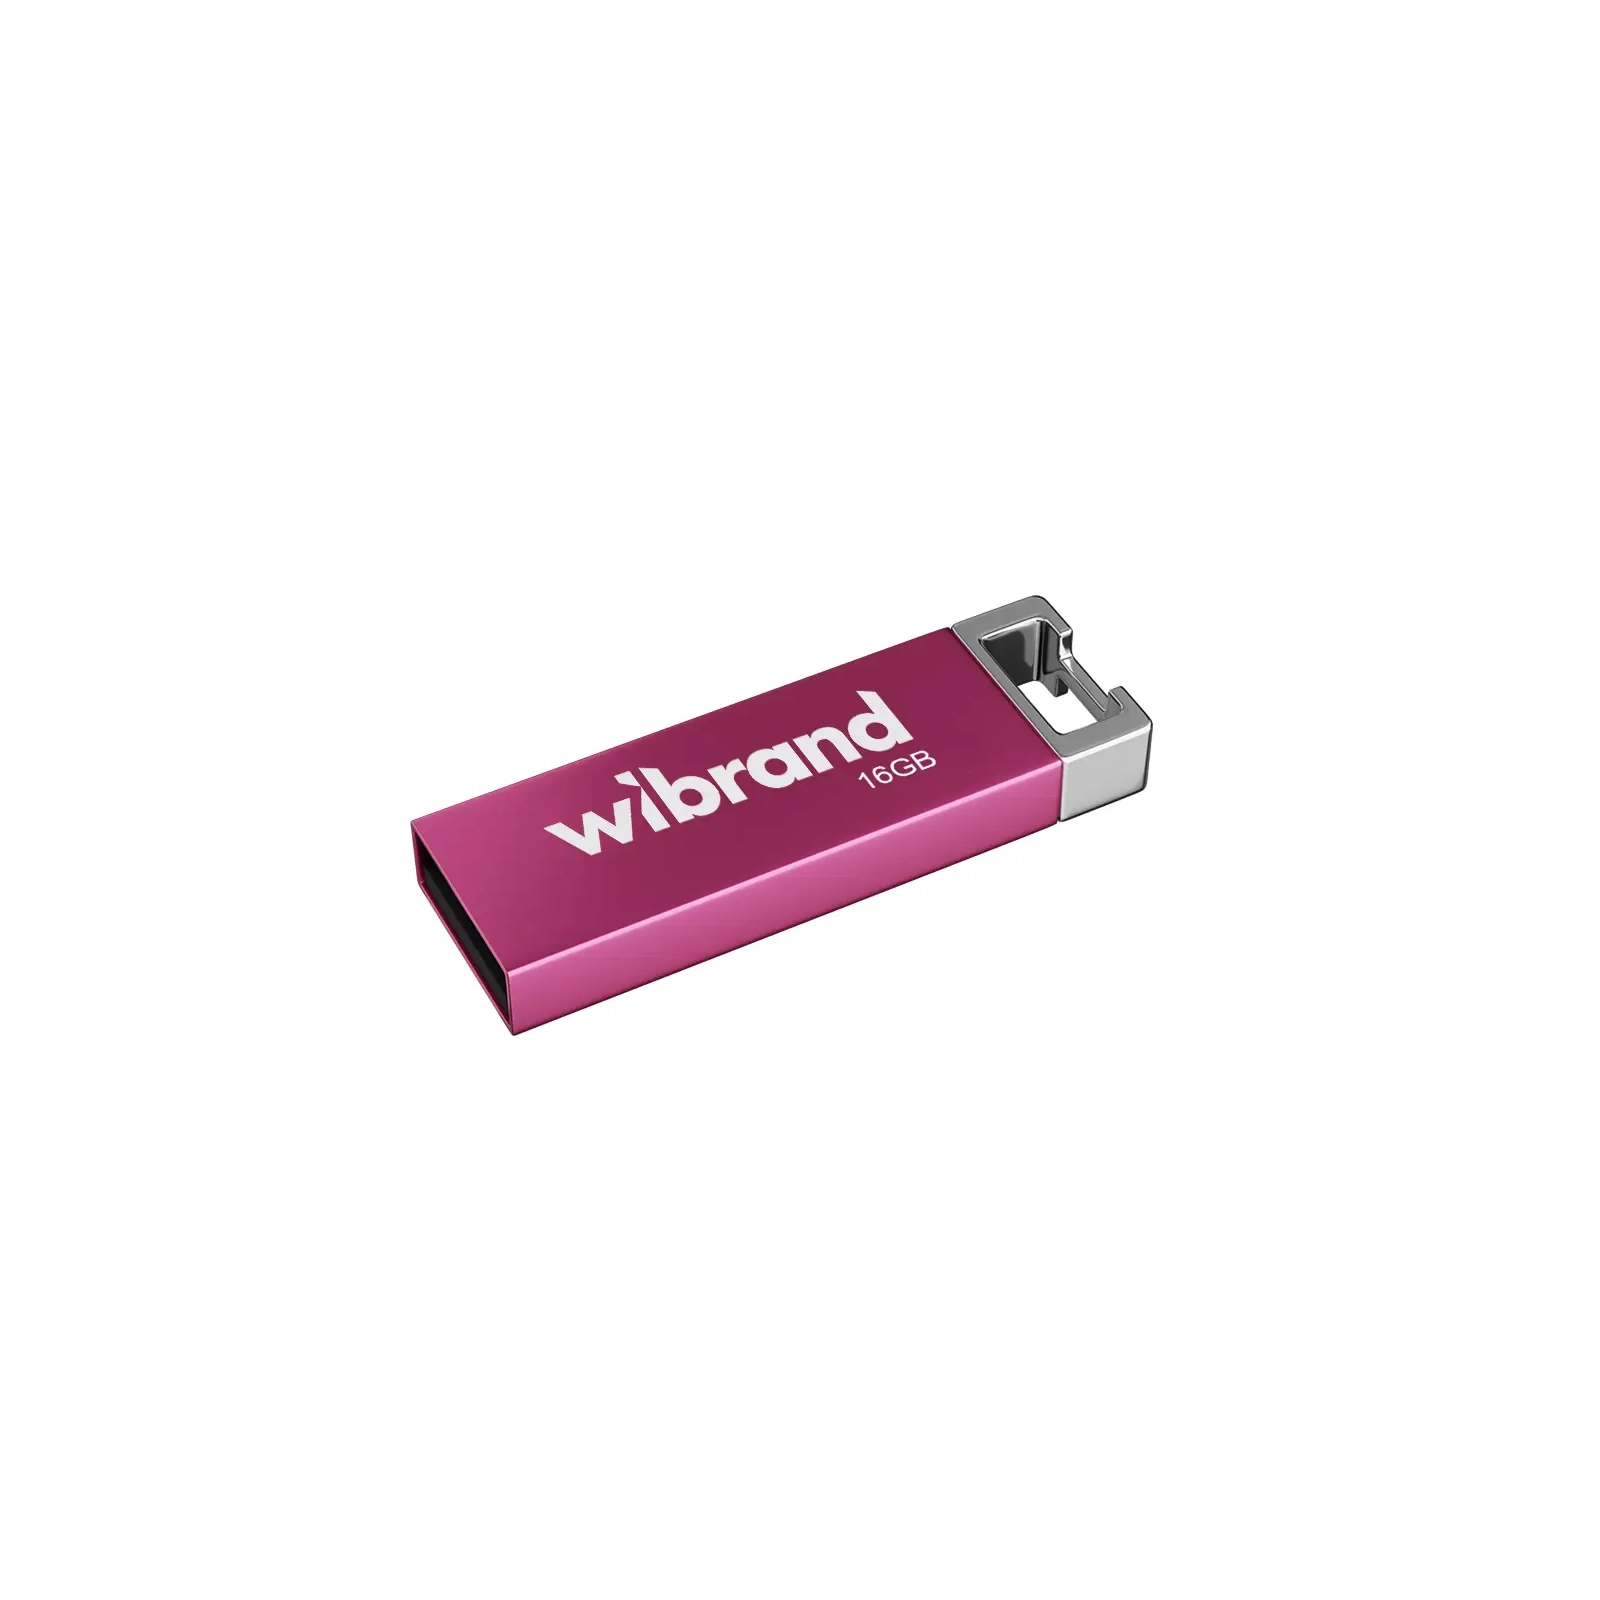 USB флеш накопитель Wibrand 16GB Chameleon Green USB 2.0 (WI2.0/CH16U6LG)